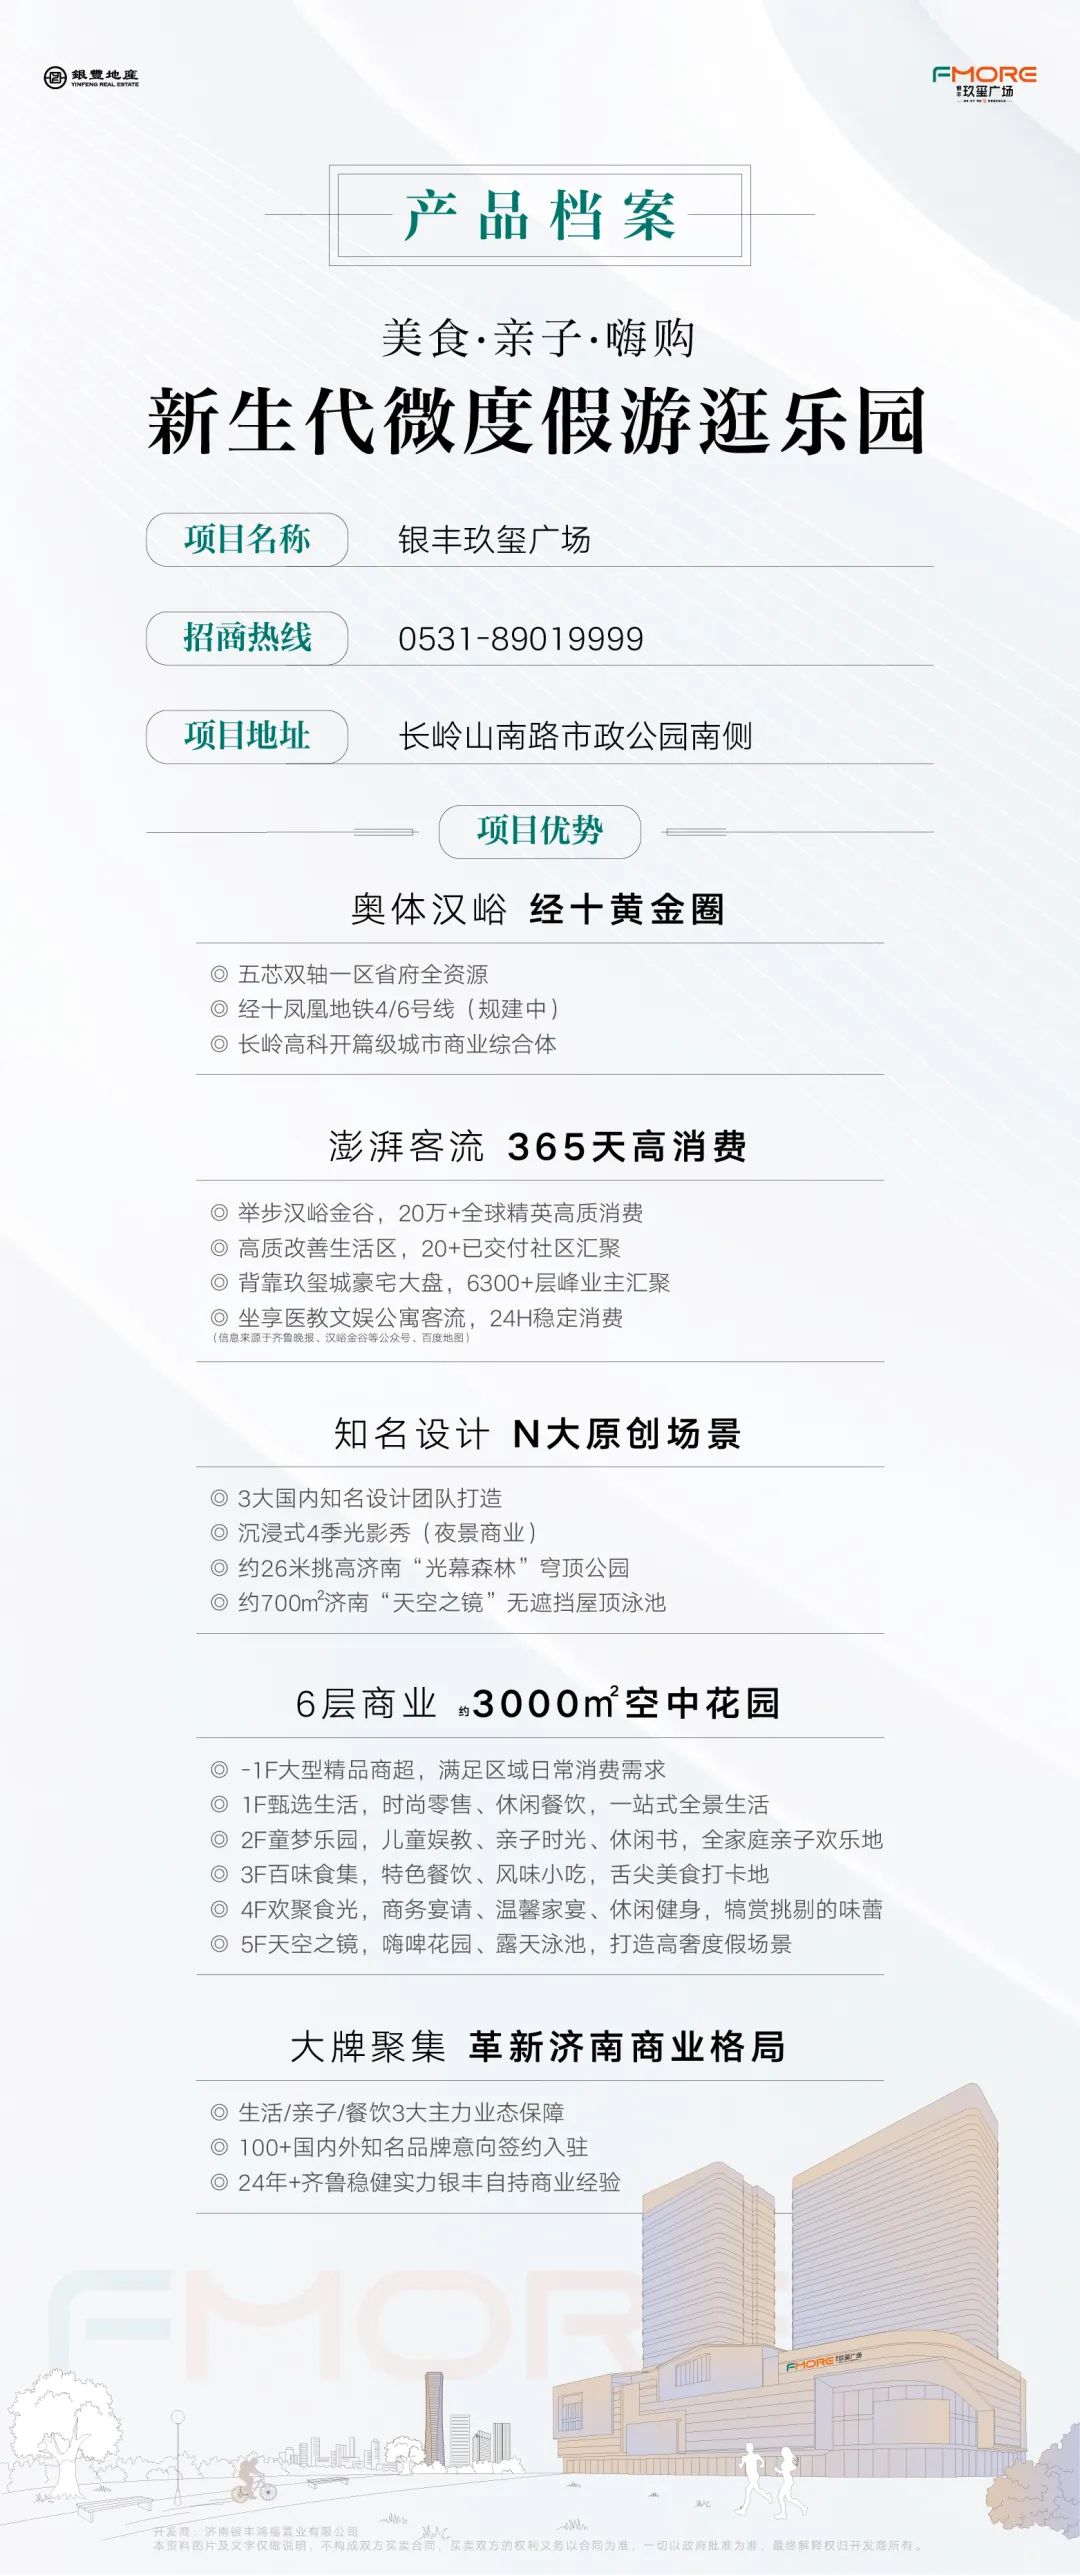 100+知名品牌意向签约，明年有望亮相的济南银丰玖玺广场有你的期待吗？